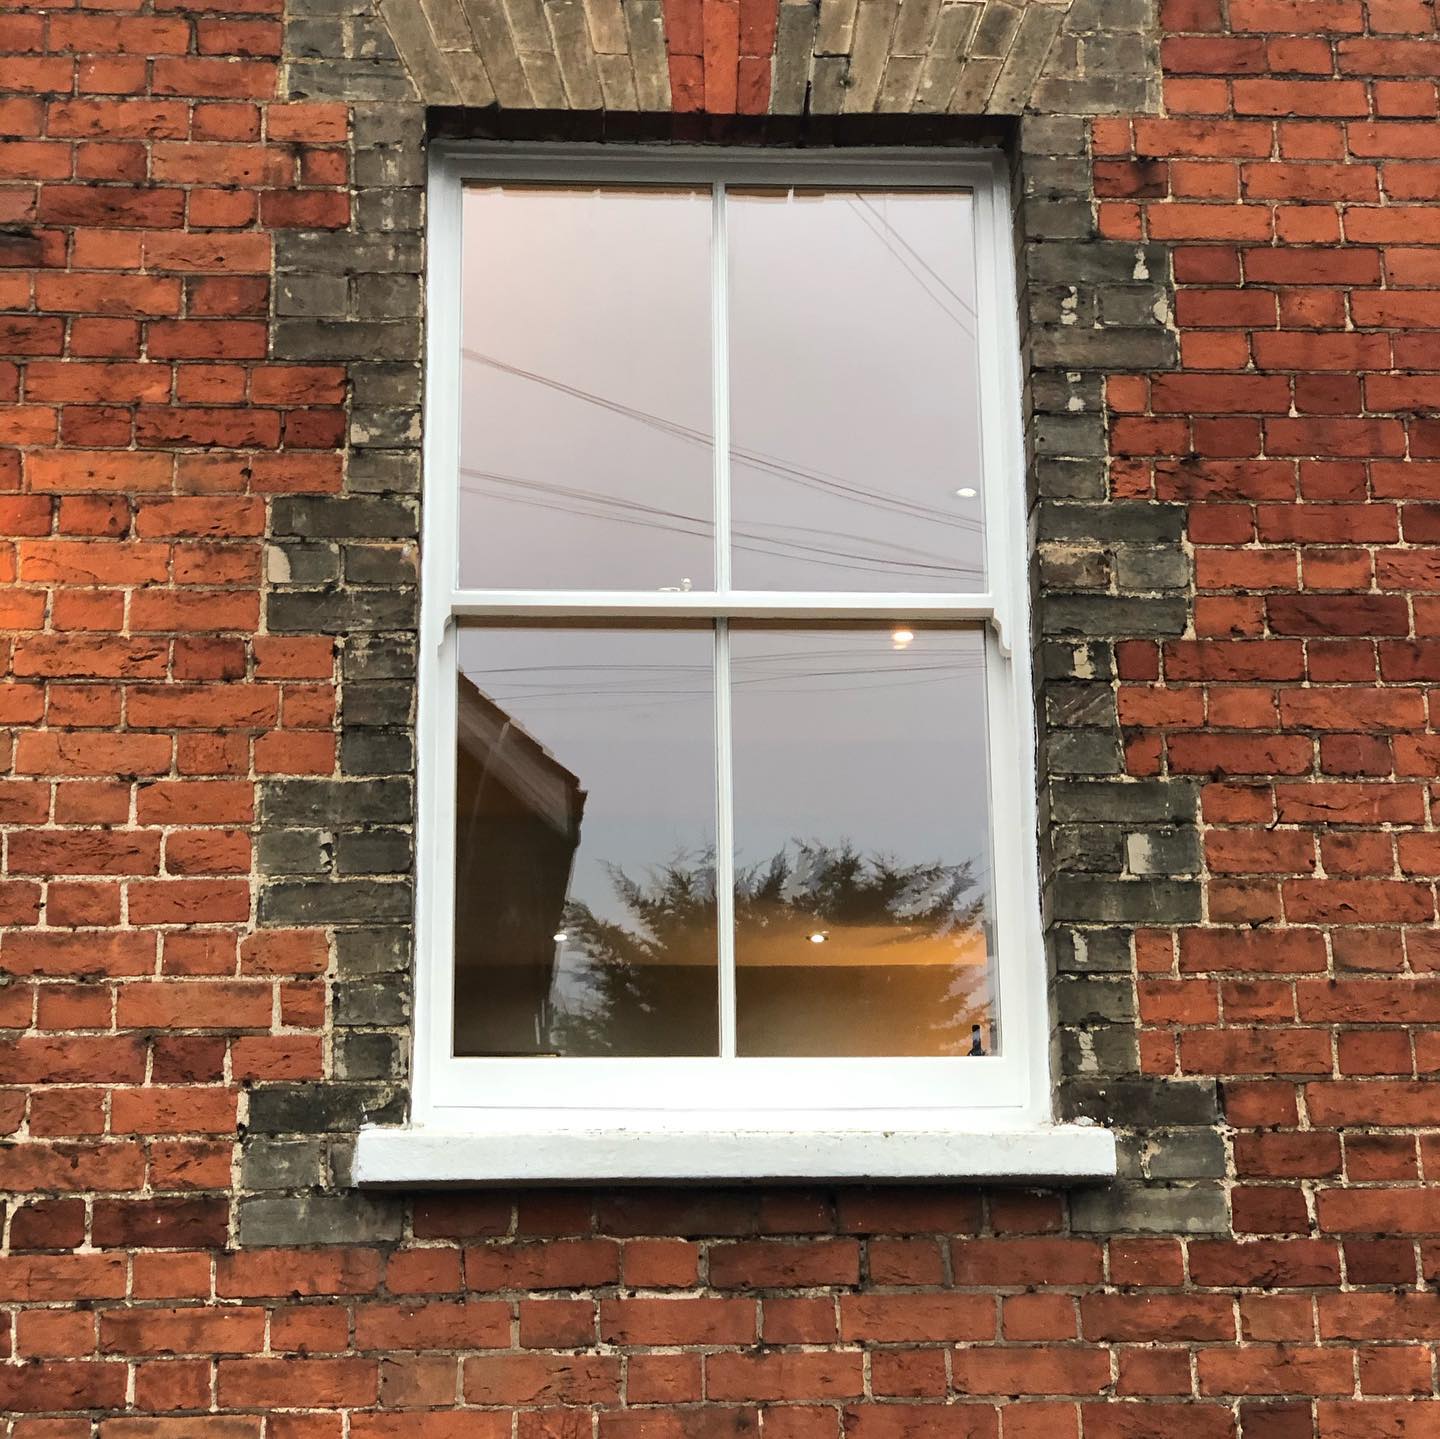 Installation Of New Hard Wood Sash Windows With Double Glazed Laminated